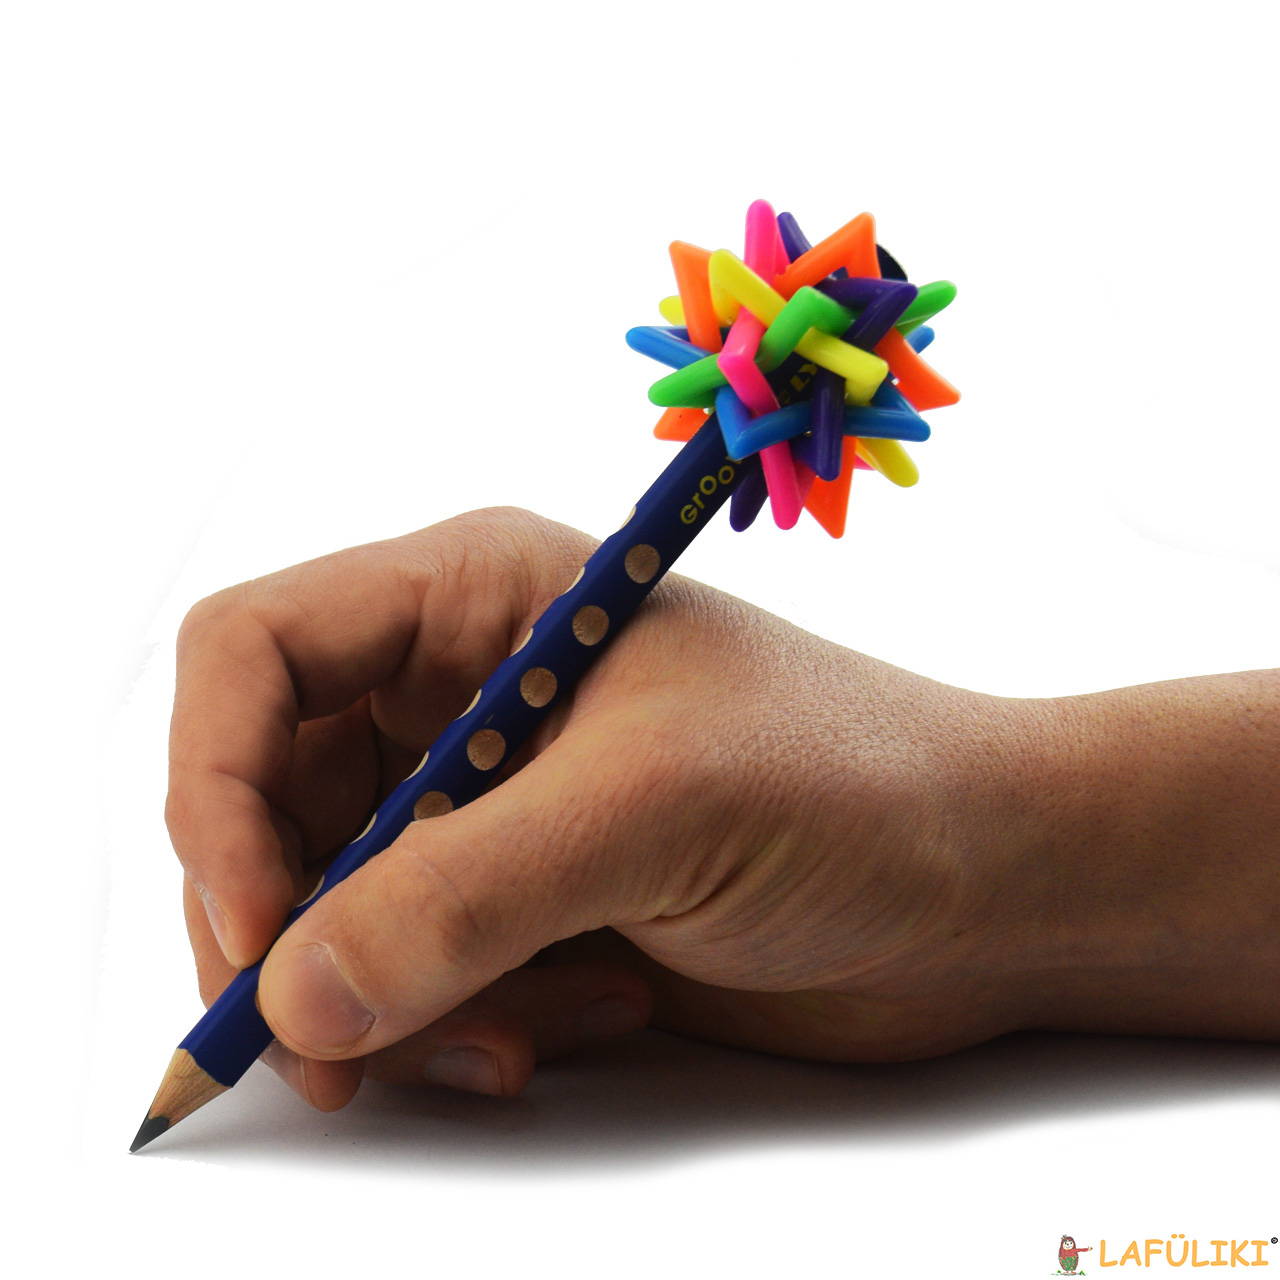 Stiftbeschwerer-Magie-4in1-Anwendung-beim-schreiben-am-Stift-ende-lafueliki